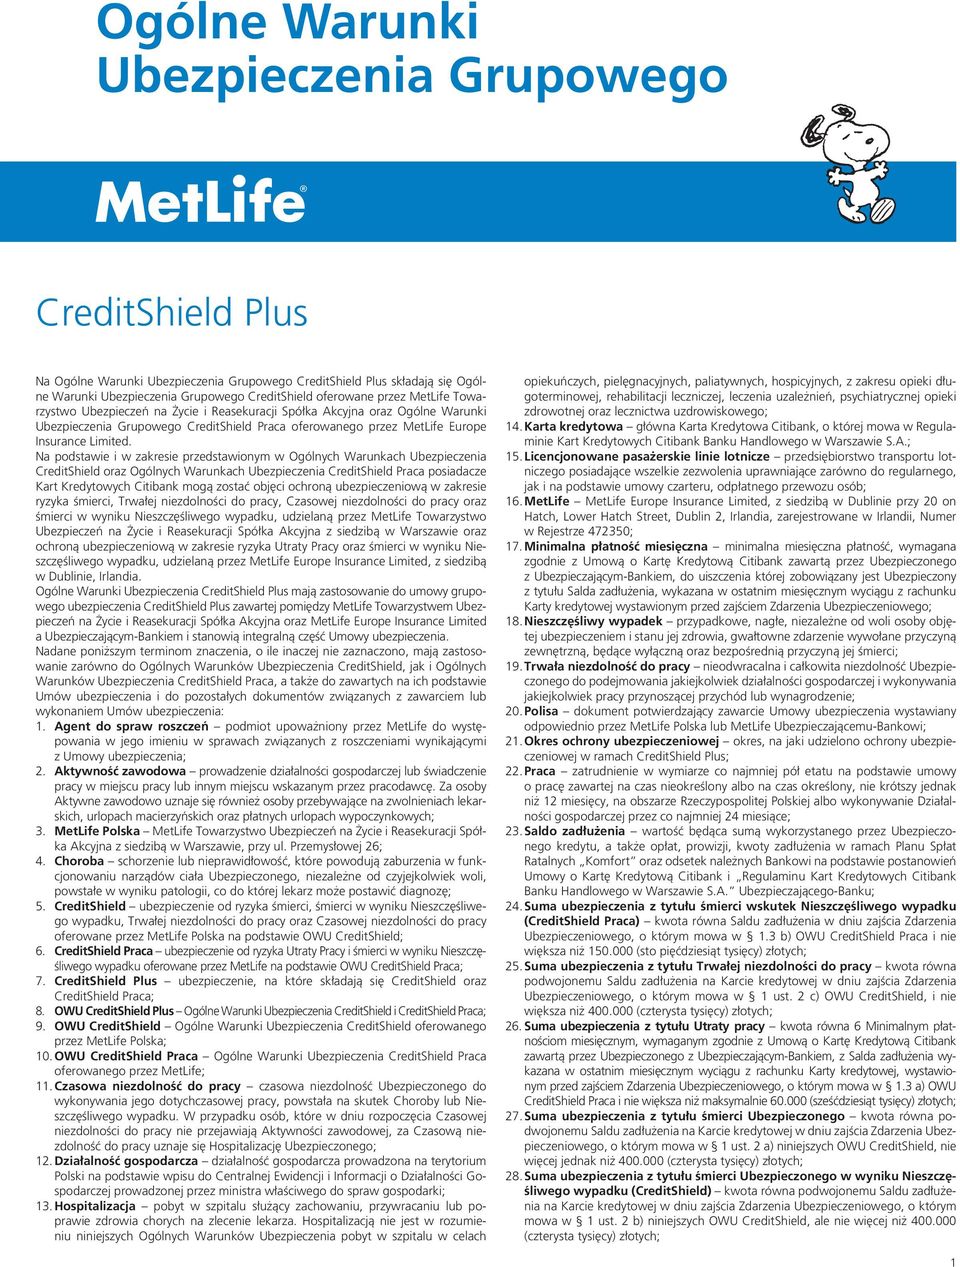 Na podstawie i w zakresie przedstawionym w Ogólnych Warunkach Ubezpieczenia CreditShield oraz Ogólnych Warunkach Ubezpieczenia CreditShield Praca posiadacze Kart Kredytowych Citibank mogą zostać